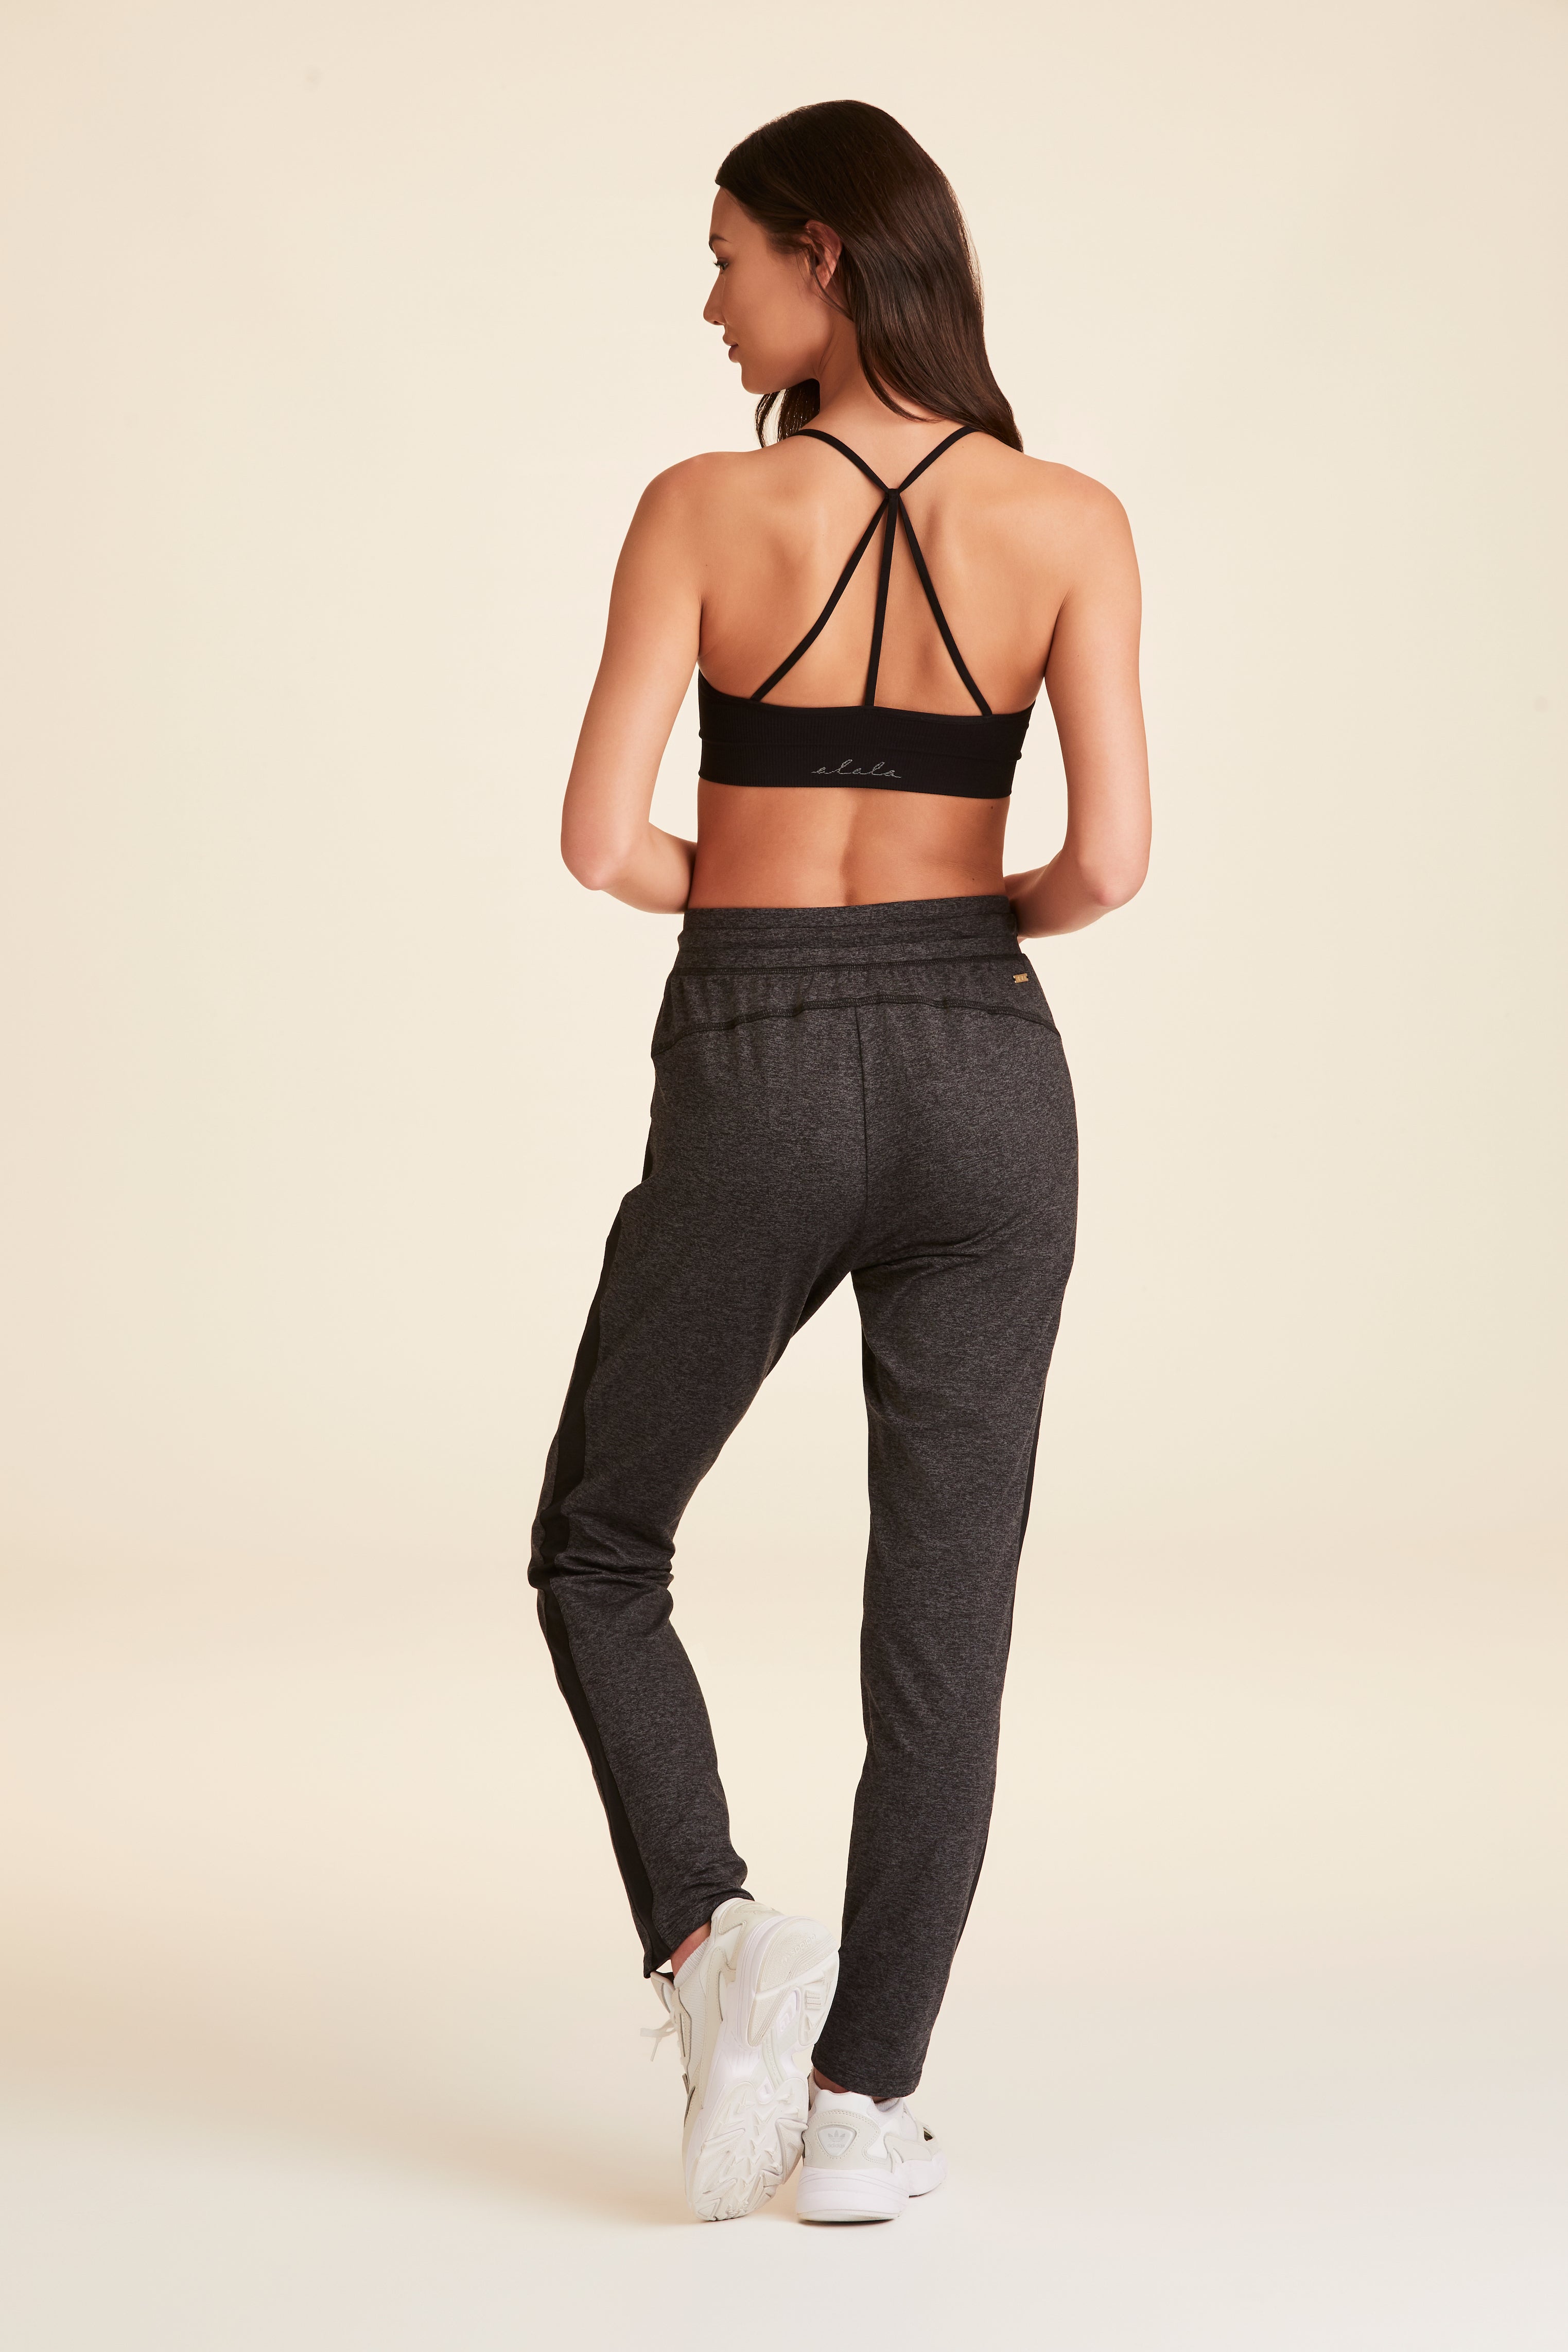 Training Jogger pants for Women | Gym Aesthetics – Gymaesthetics USA